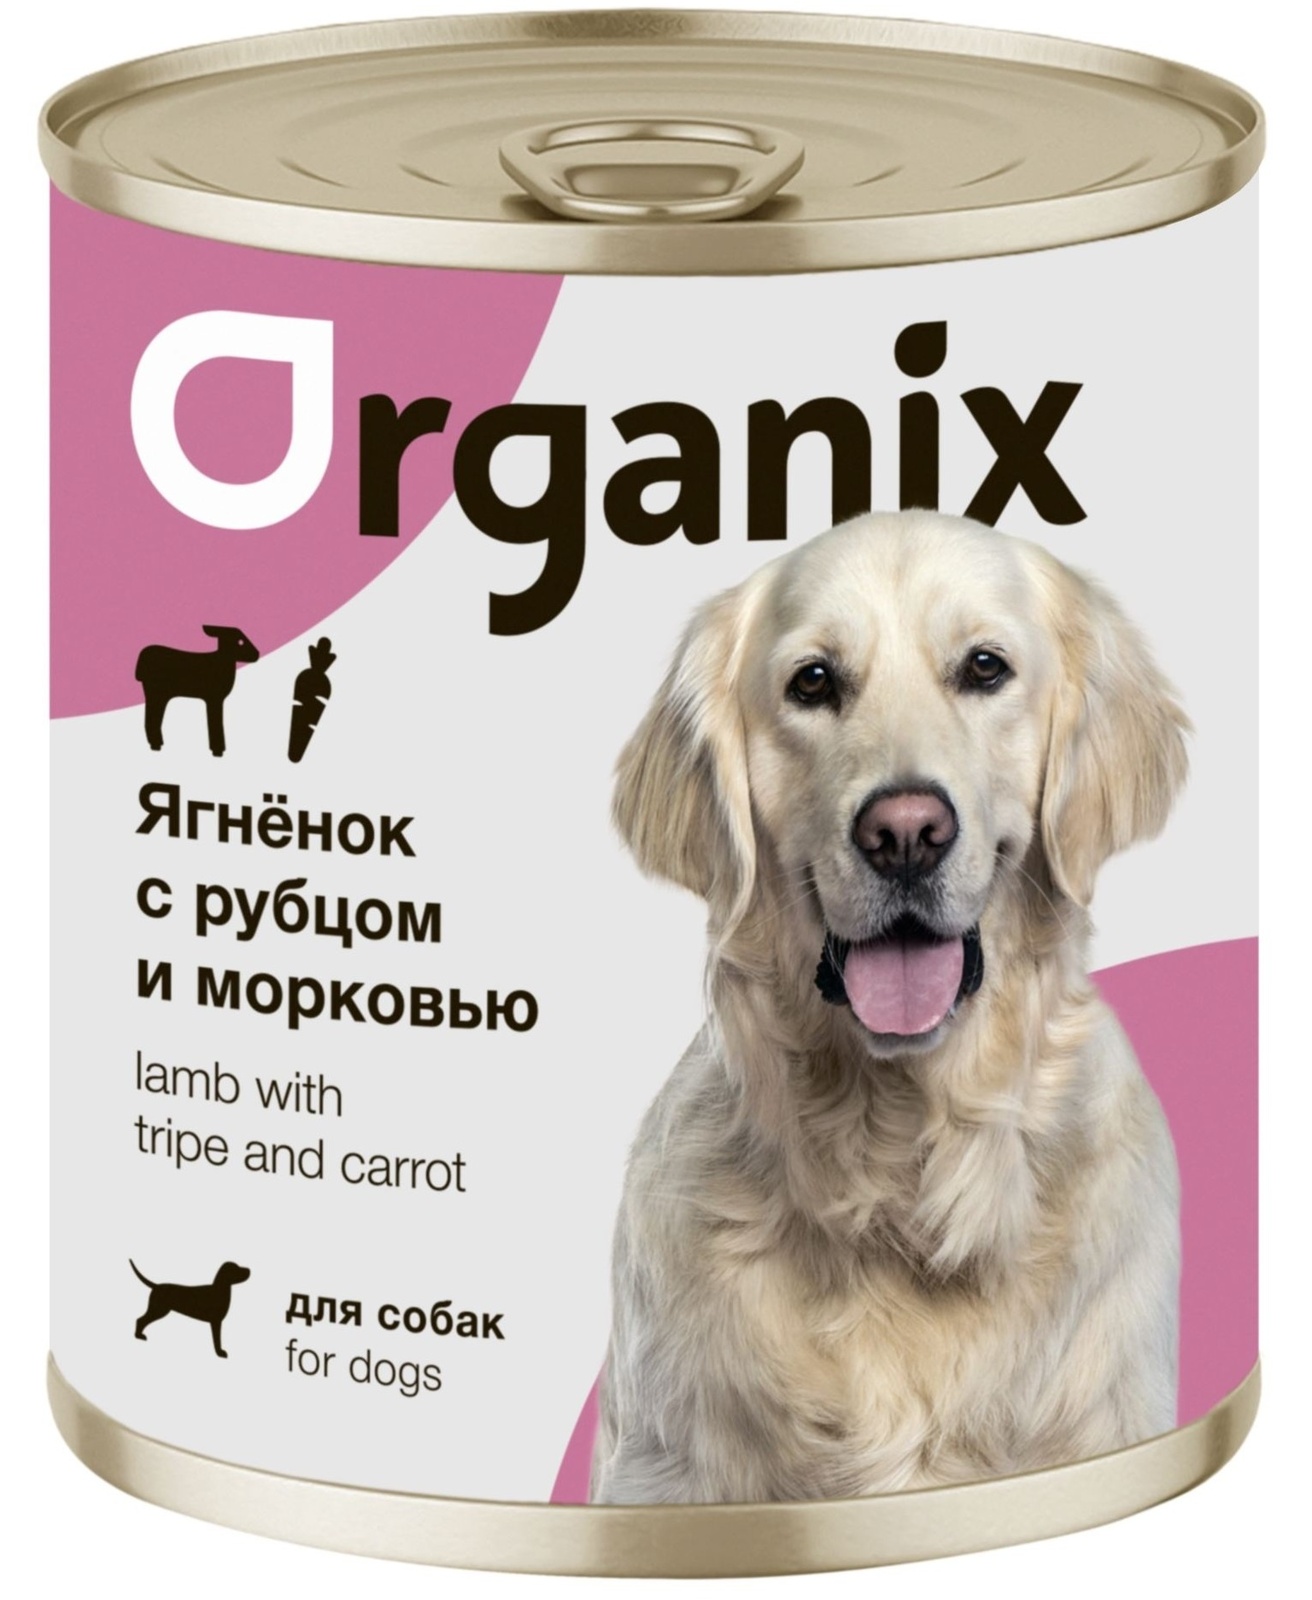 Organix консервы Organix консервы для собак Ягненок с рубцом и морковью (400 г) organix консервы organix консервы для собак телятина с зеленой фасолью 400 г